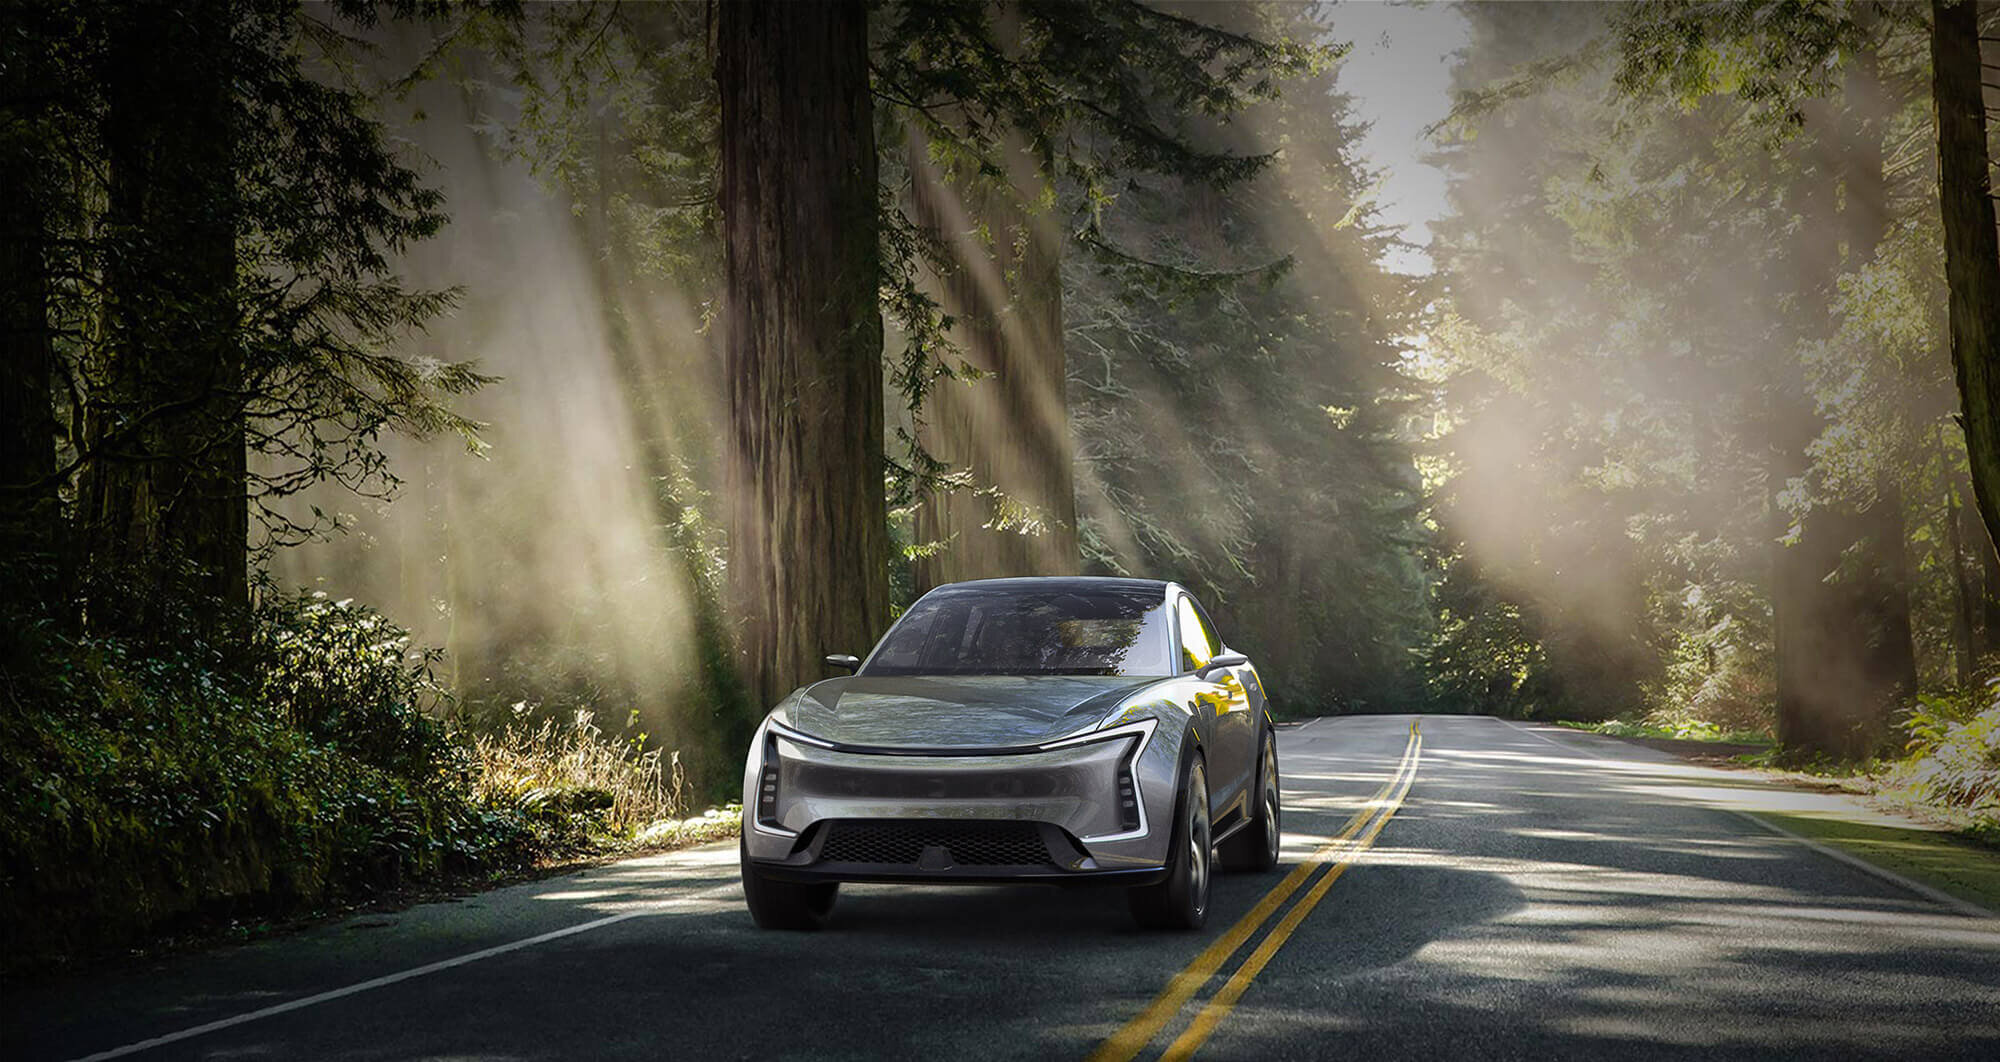 SF-Motors-Homepage-Hero-New-Car-In-Forest.jpg